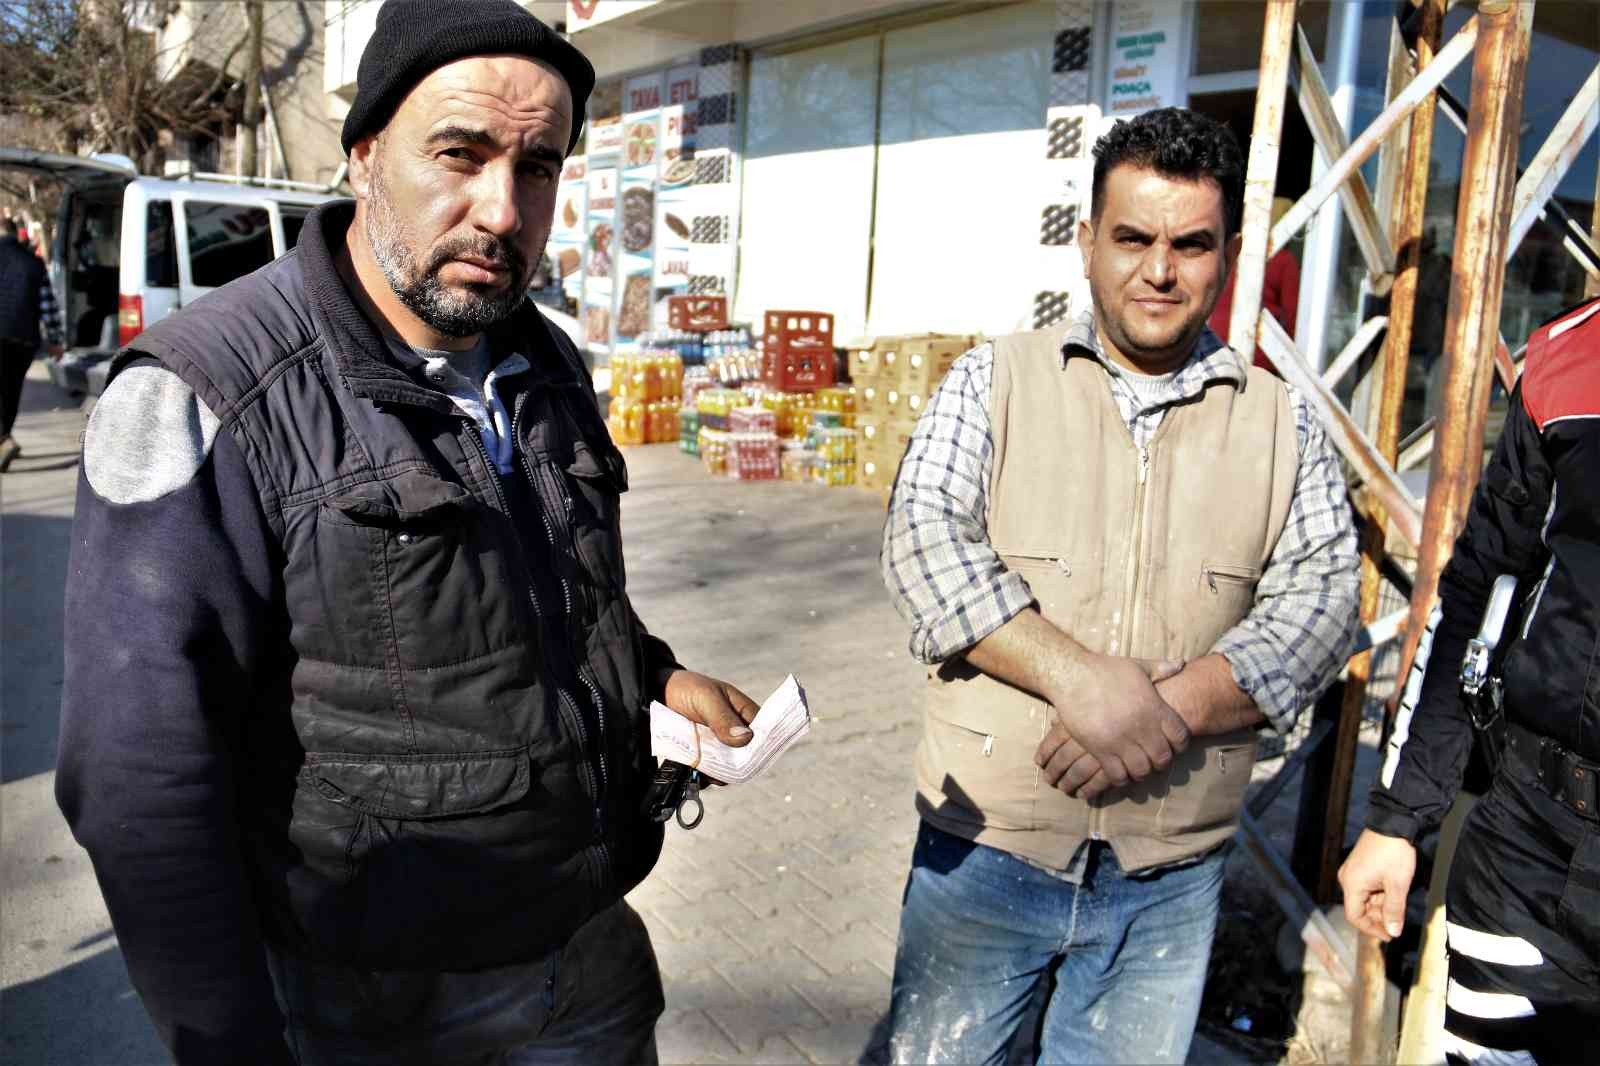 Suriyeli aile dolandırılmaktan son anda kurtuldu #kahramanmaras